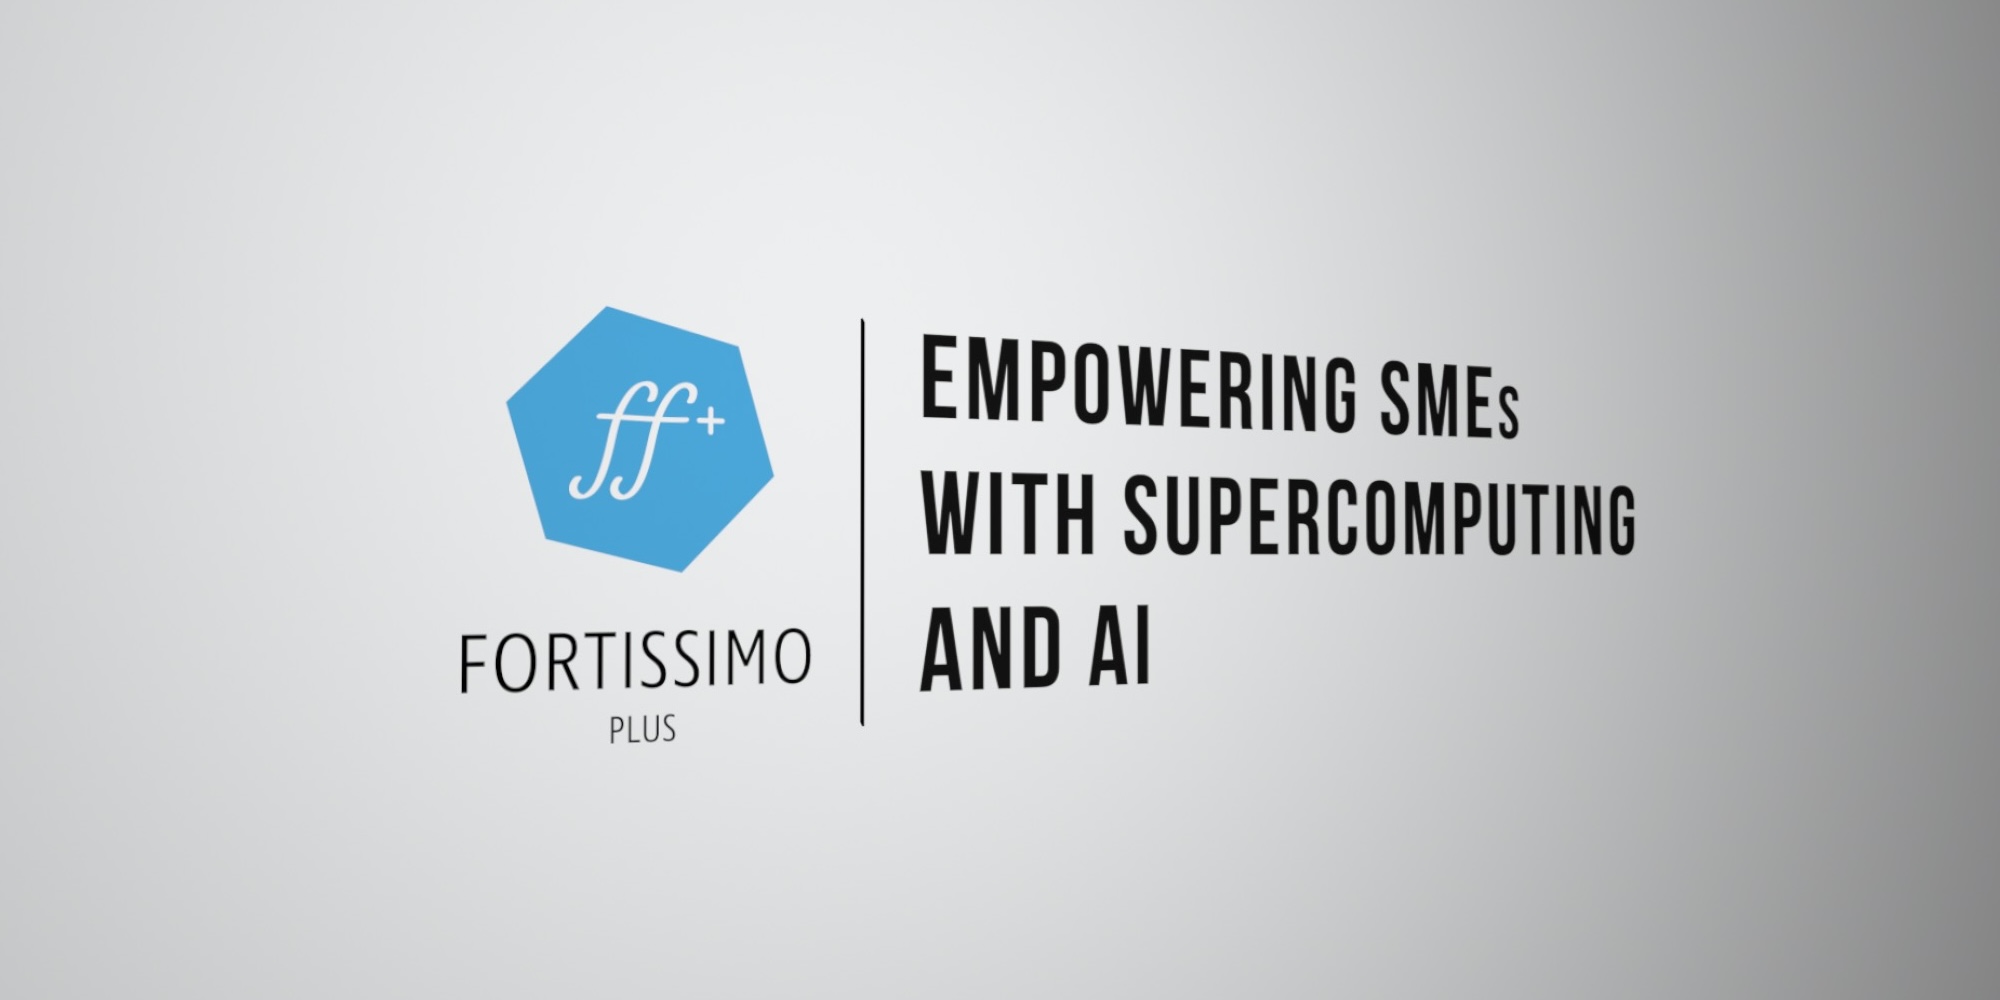 “通过超级计算和人工智能增强中小企业能力”标题旁边的FFPlus标志